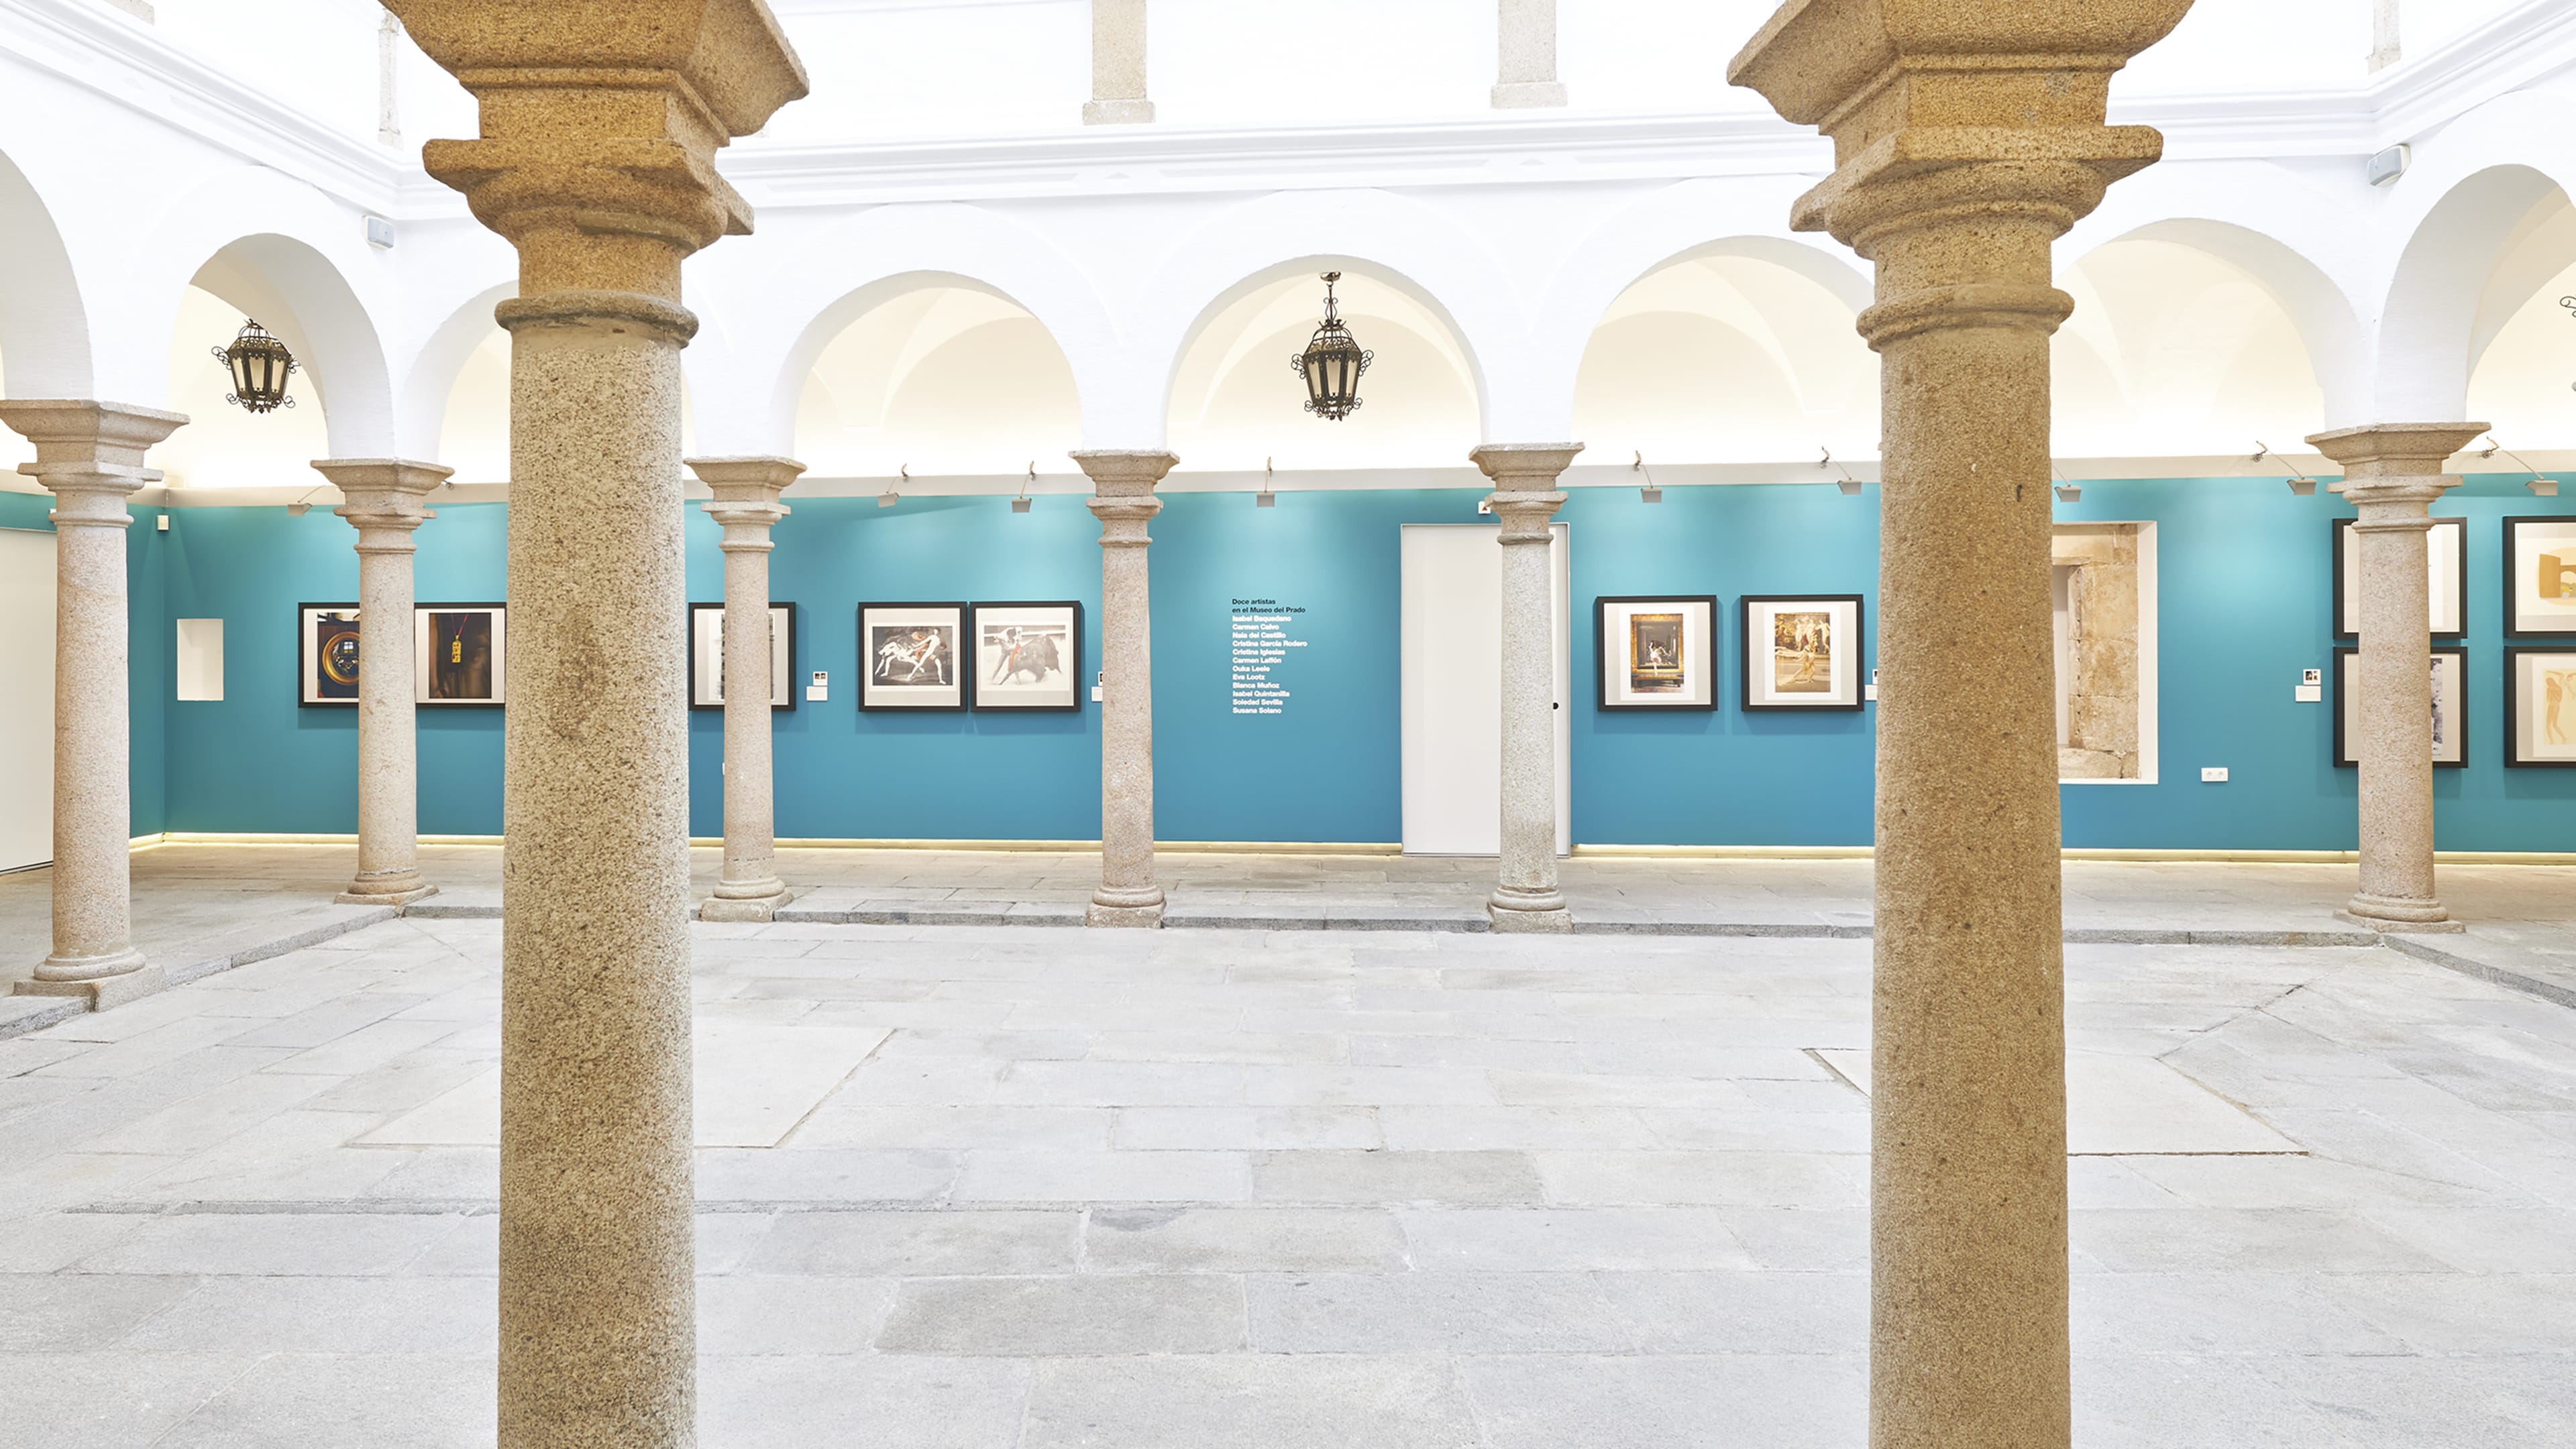 Vista principal de la sala de exposiciones Santa Clara de Mérida. Exposición 12 artistas en el Museo del Prado